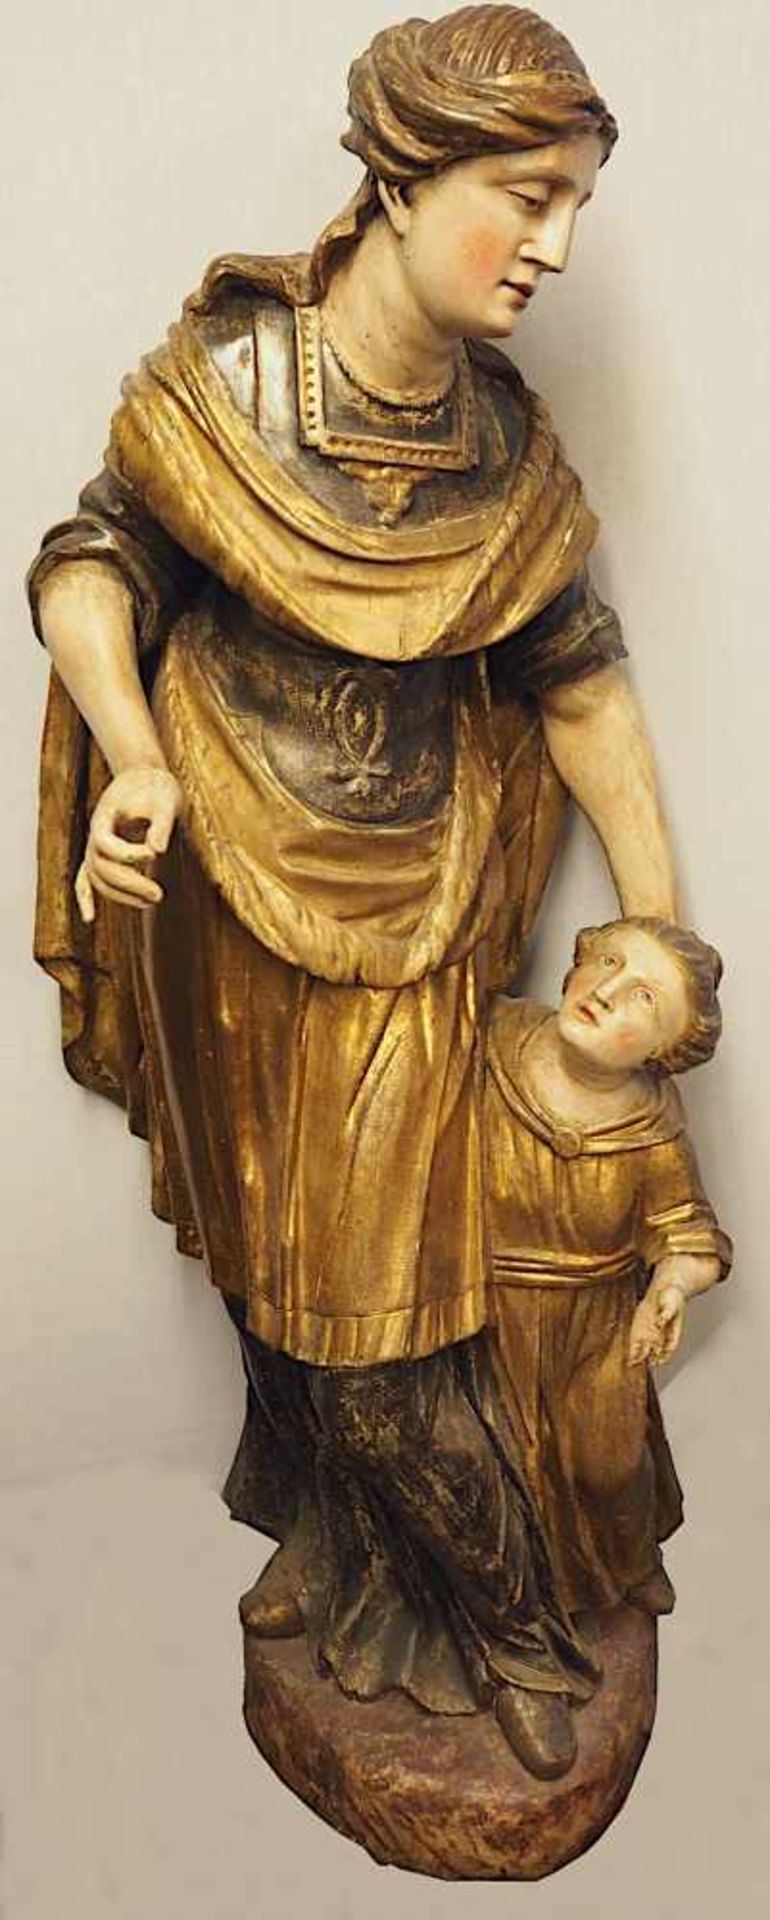 1 Holzfigur "Schutzengel mit Kind" wohl Unterfranken, Ende 17. Jh.